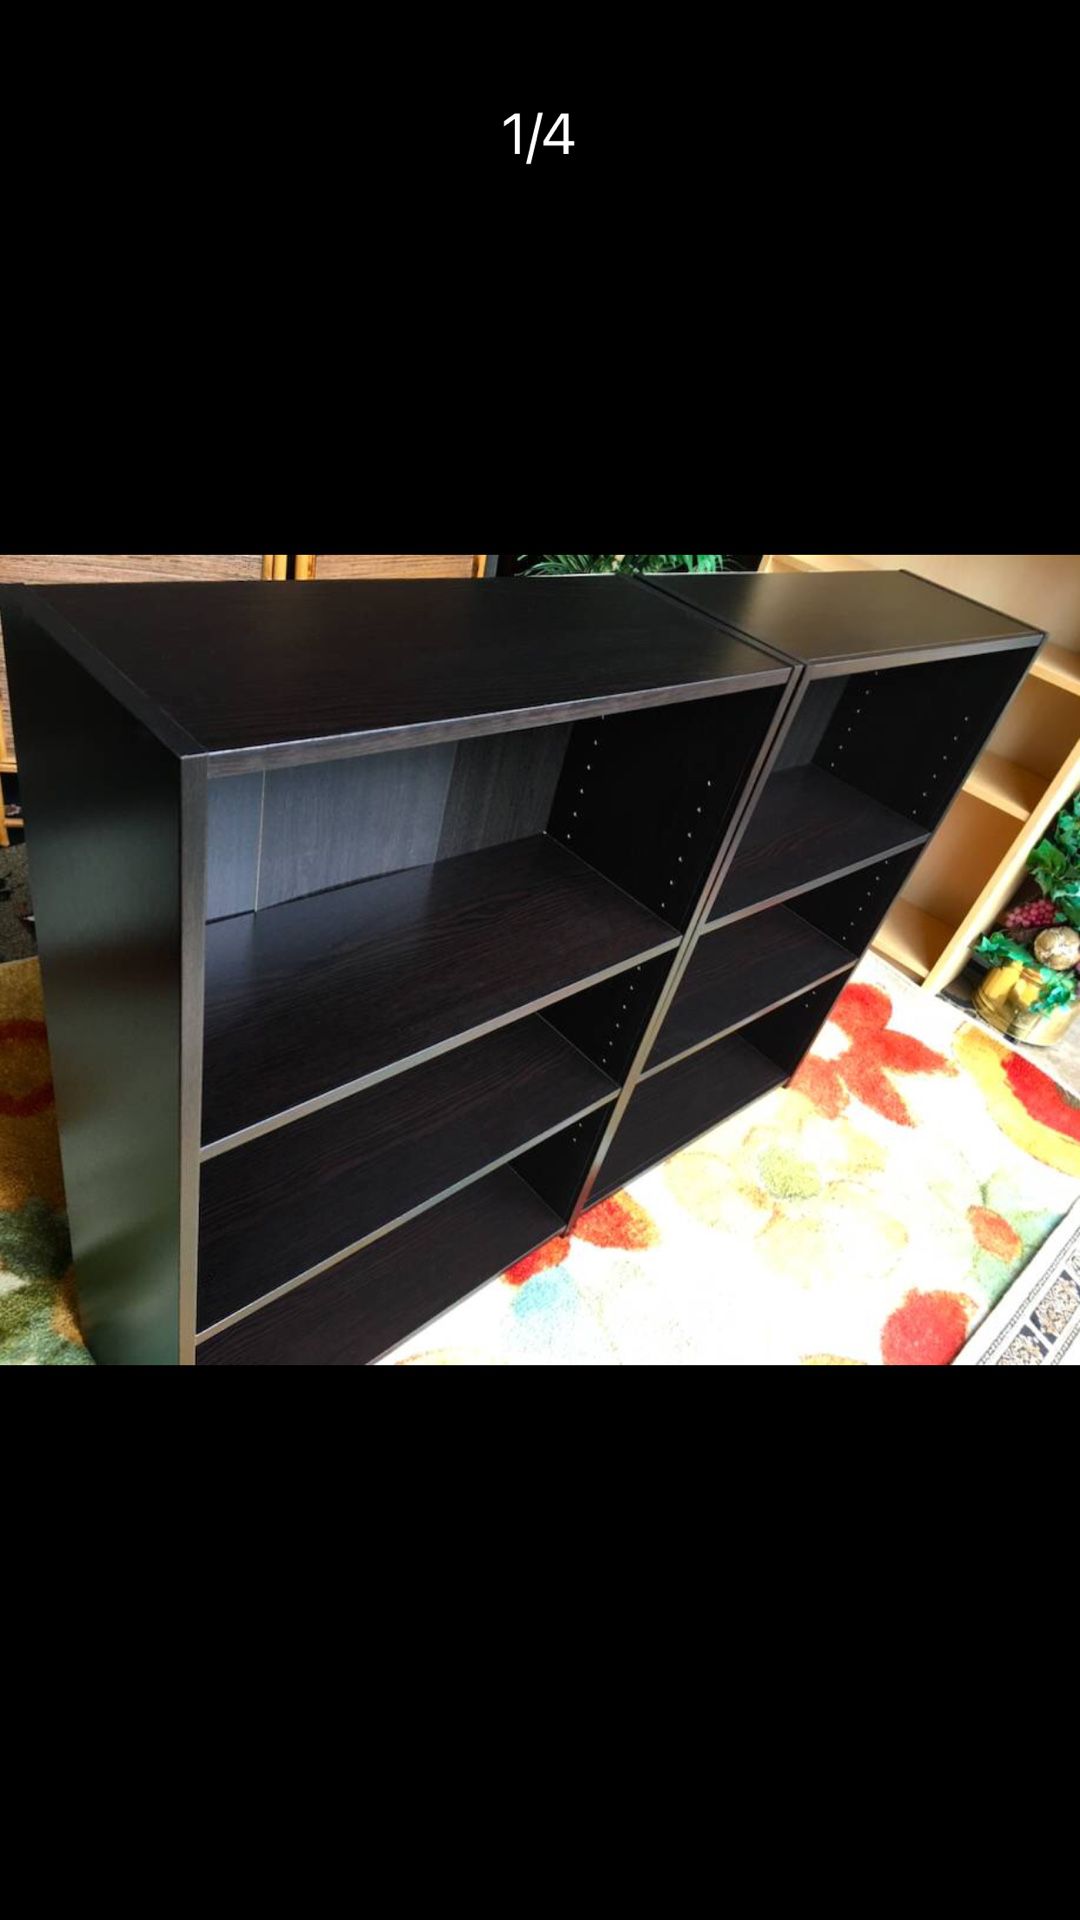 2 Matching Dark Shelves/ Bookshelves, Like New - 36H x 25W x 10D (the shelves inside are adjustable) 